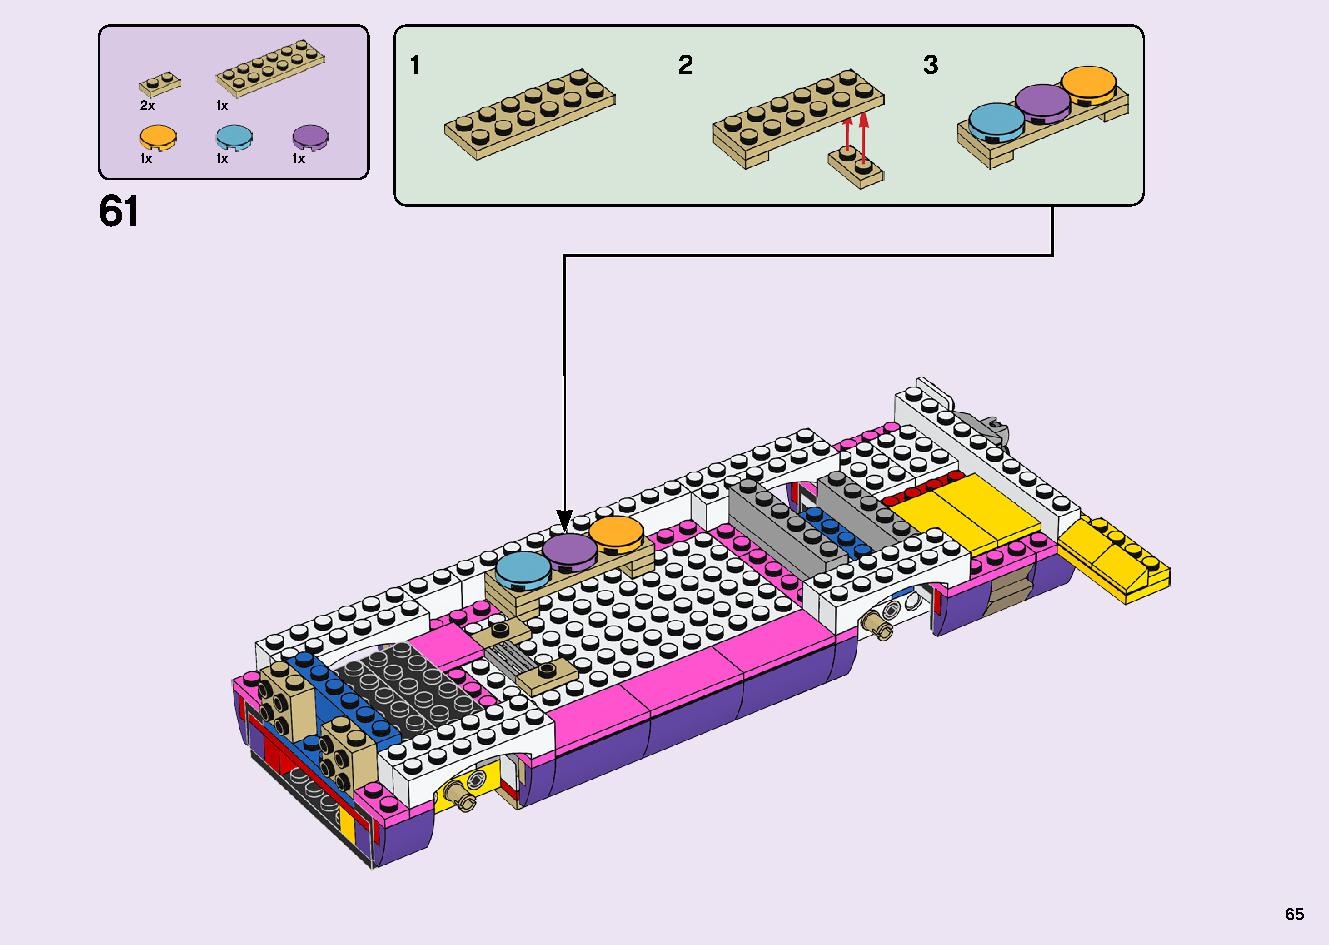 フレンズのうきうきハッピー・バス 41395 レゴの商品情報 レゴの説明書・組立方法 65 page